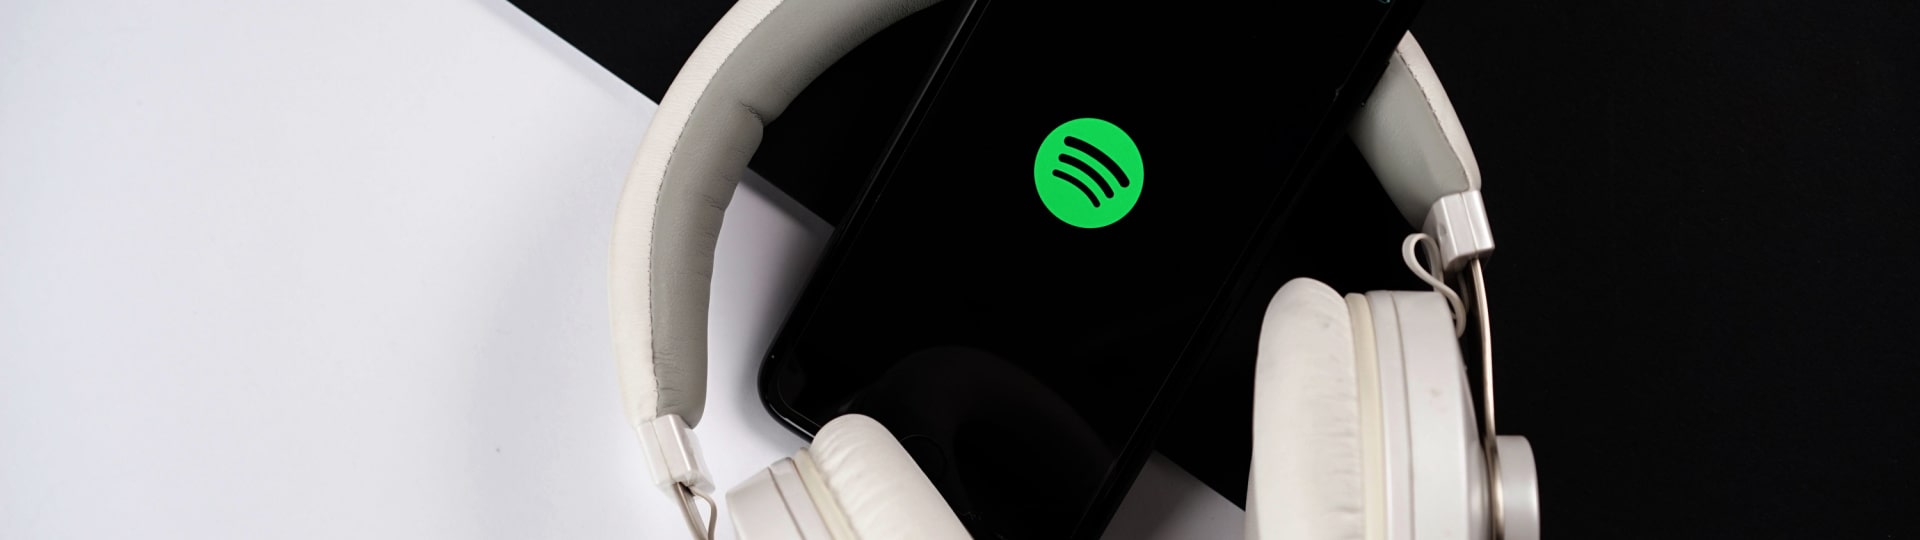 Spotify propustí ve své podcastové divizi asi 200 lidí